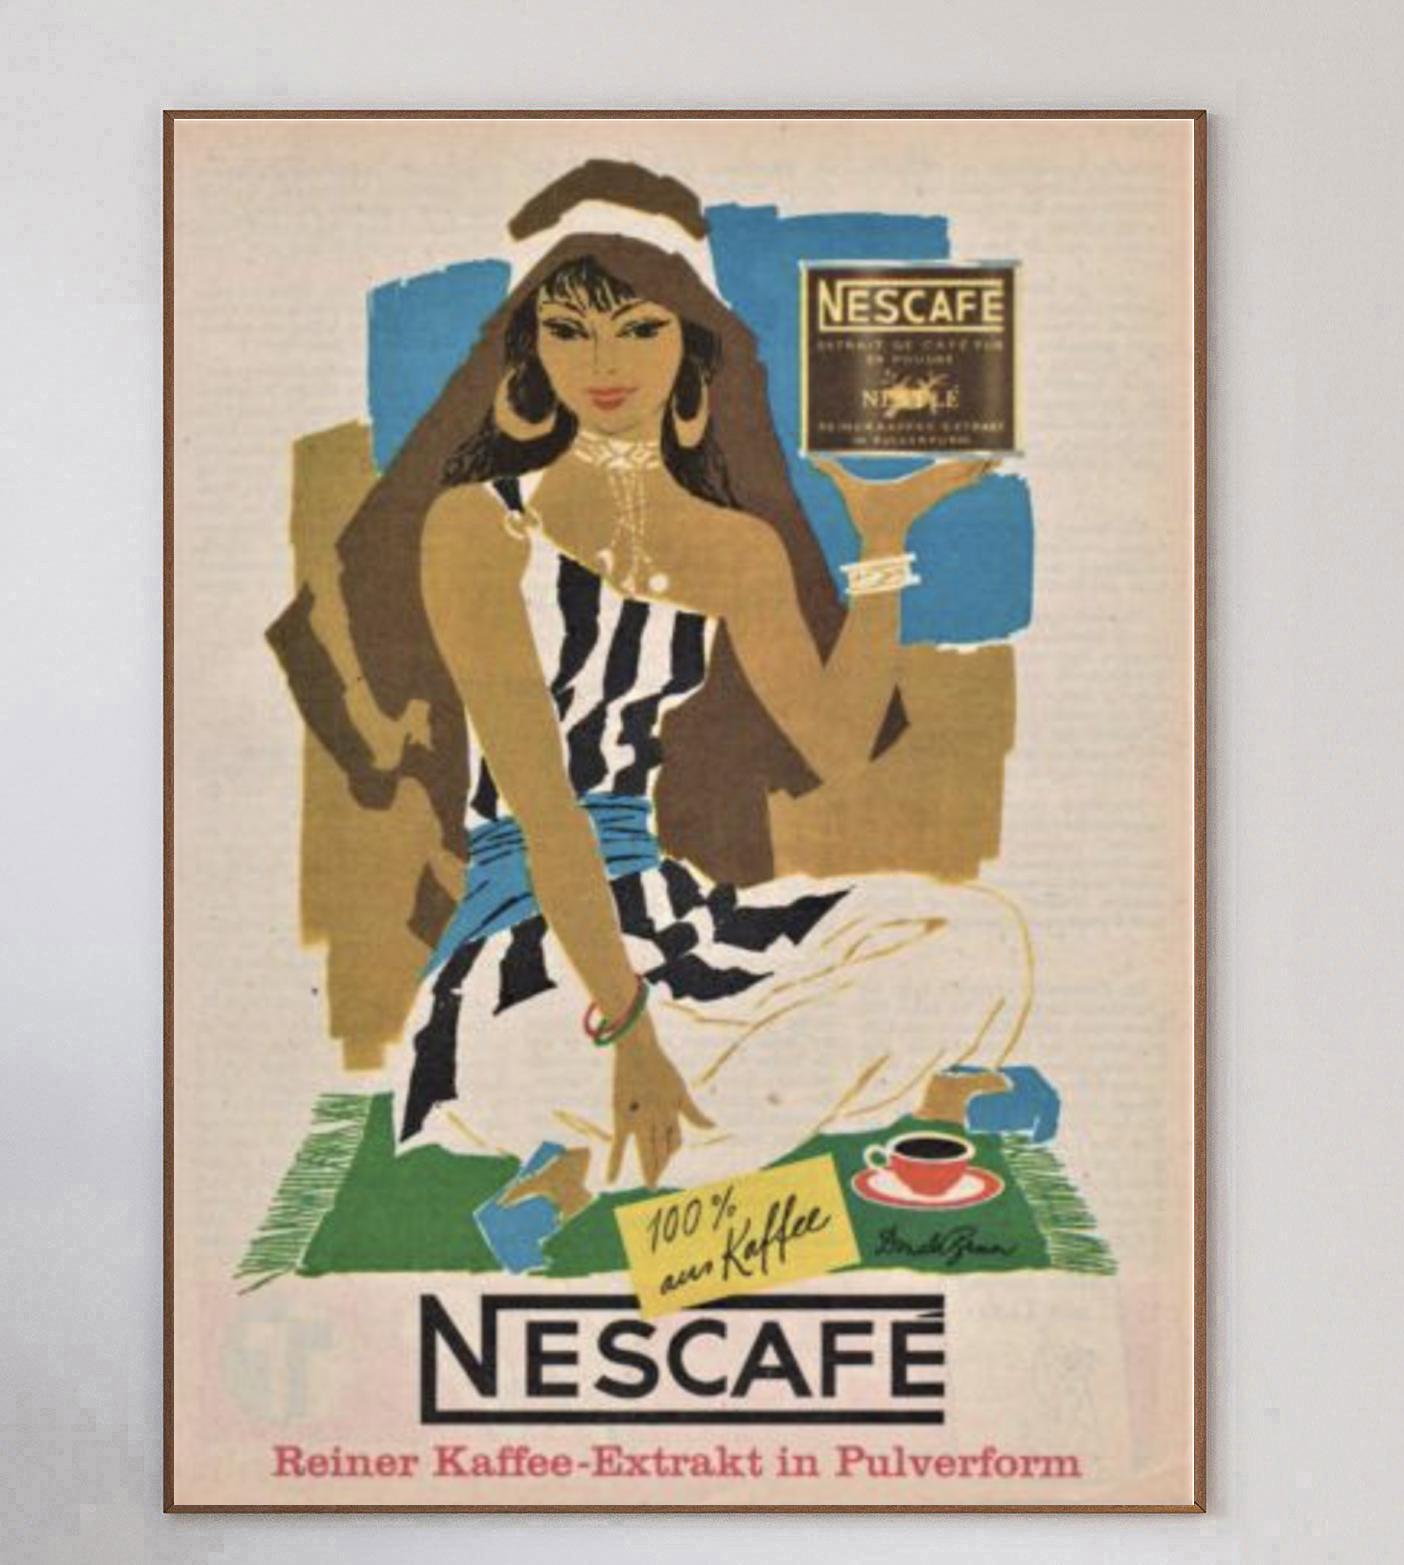 Cette magnifique affiche a été créée en 1963 pour promouvoir Nescafe. Elle est l'œuvre du graphiste suisse Donald Brun et représente une femme assise en train de déguster un café. Nescafe, qui a vu le jour en Suisse en 1938, est la marque de café